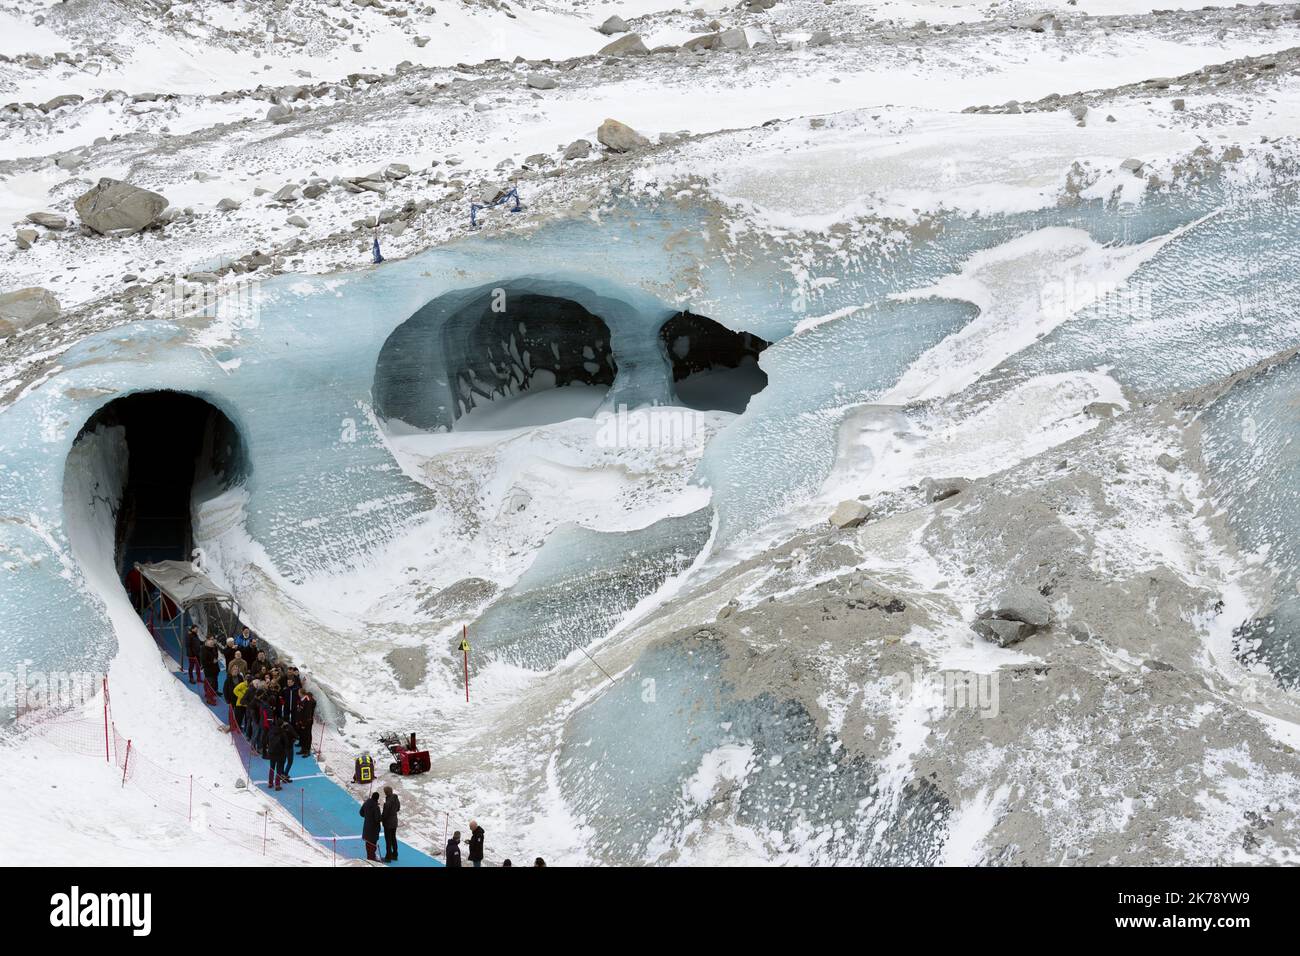 Il presidente francese Emmanuel Macro visita il ghiacciaio Mer de glace vicino a Chamonix, sulla catena montuosa del Monte Bianco nelle Alpi francesi Foto Stock